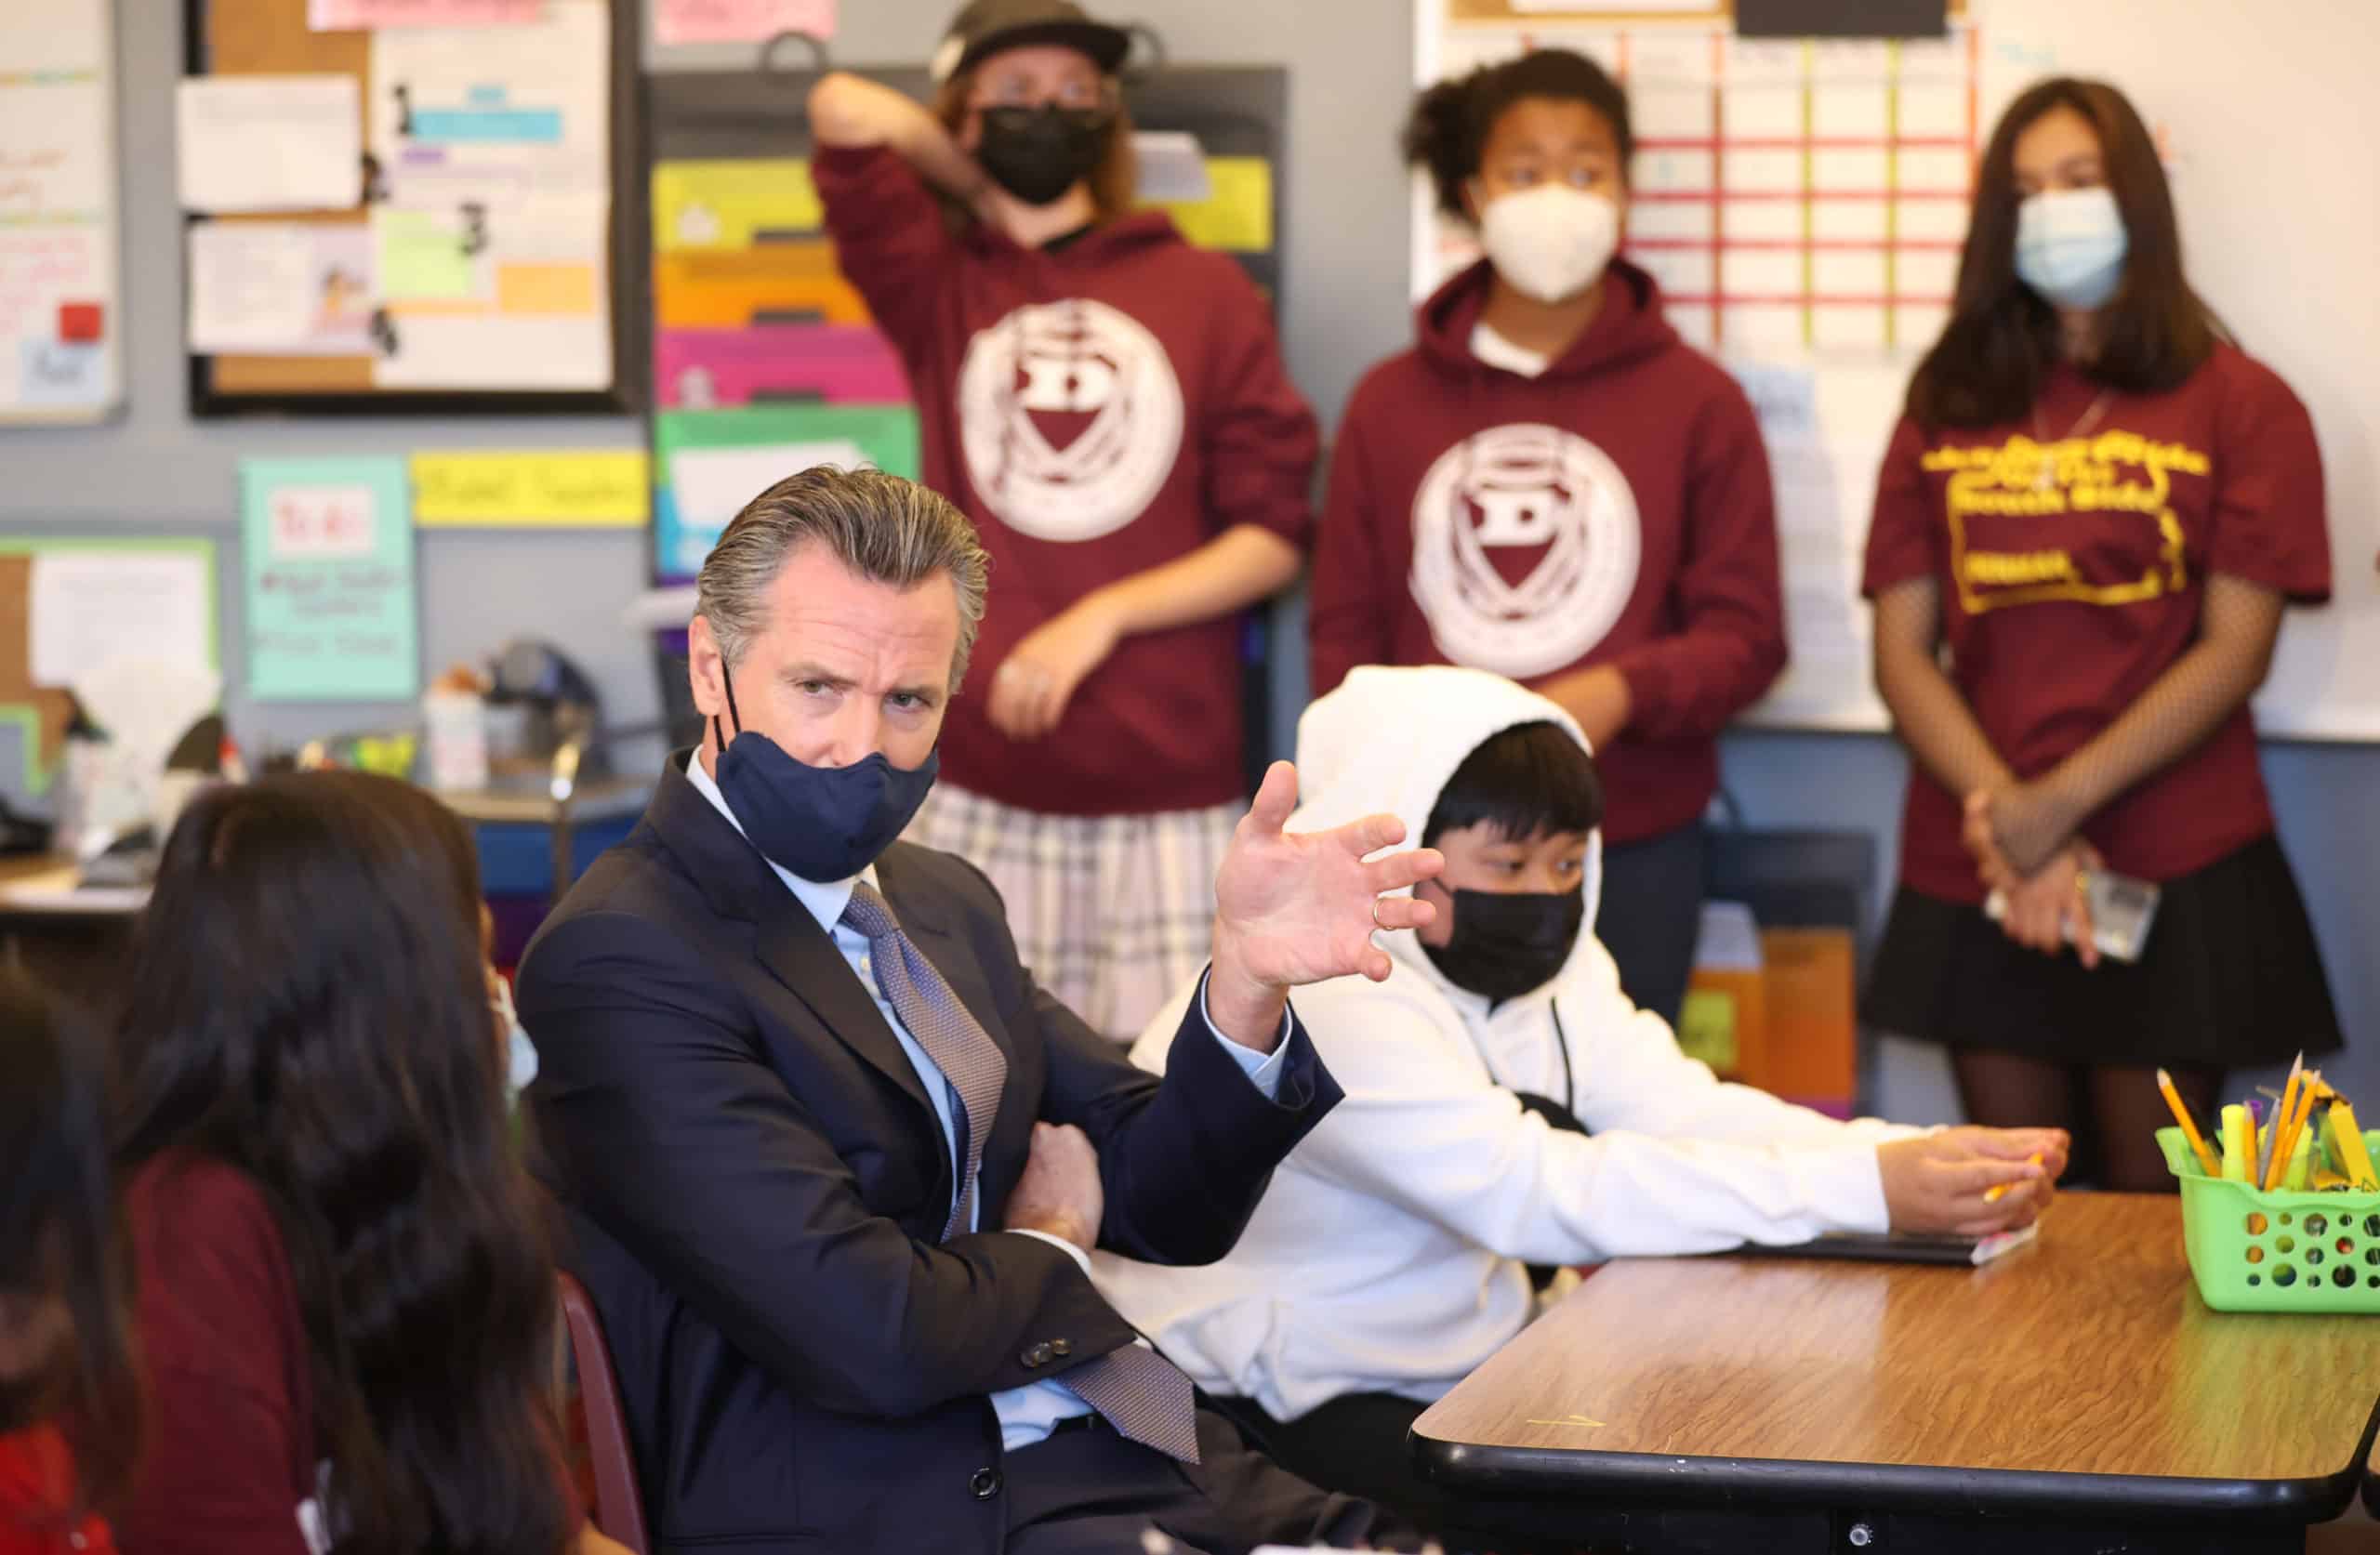 Le gouverneur de Californie Gavin Newsom a annoncé vendredi matin que tous les élèves devront se faire vacciner contre le covid-19 pour pouvoir aller à l'école.